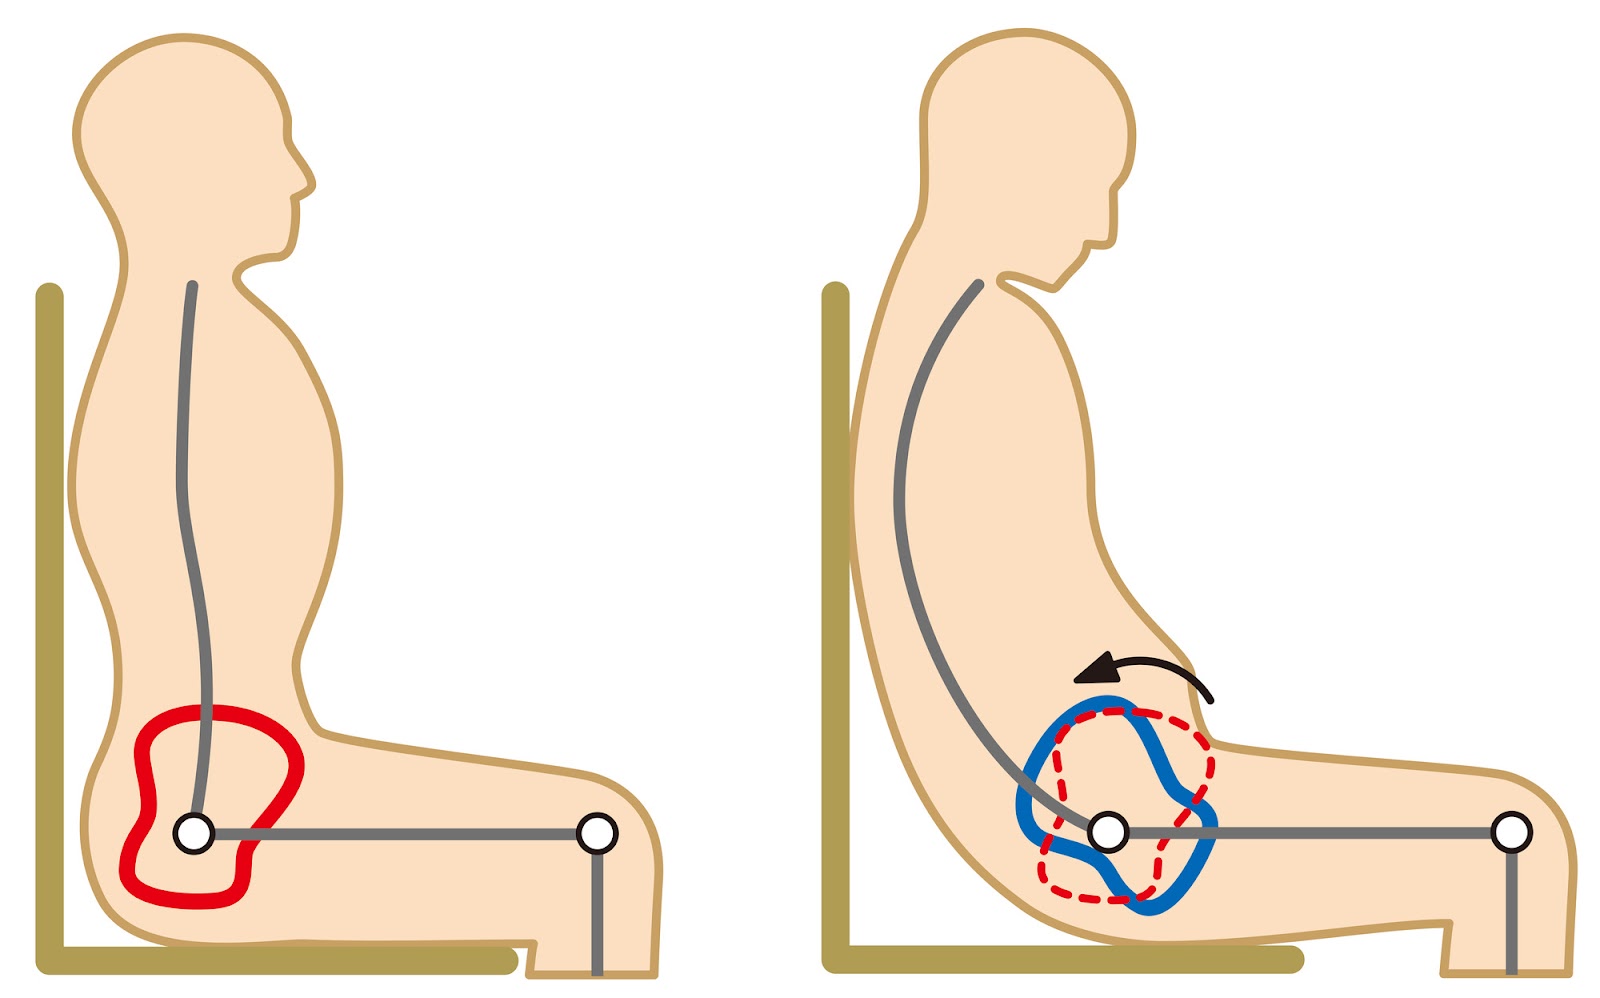 医学的に正しい姿勢を知ることで、より楽に座れる